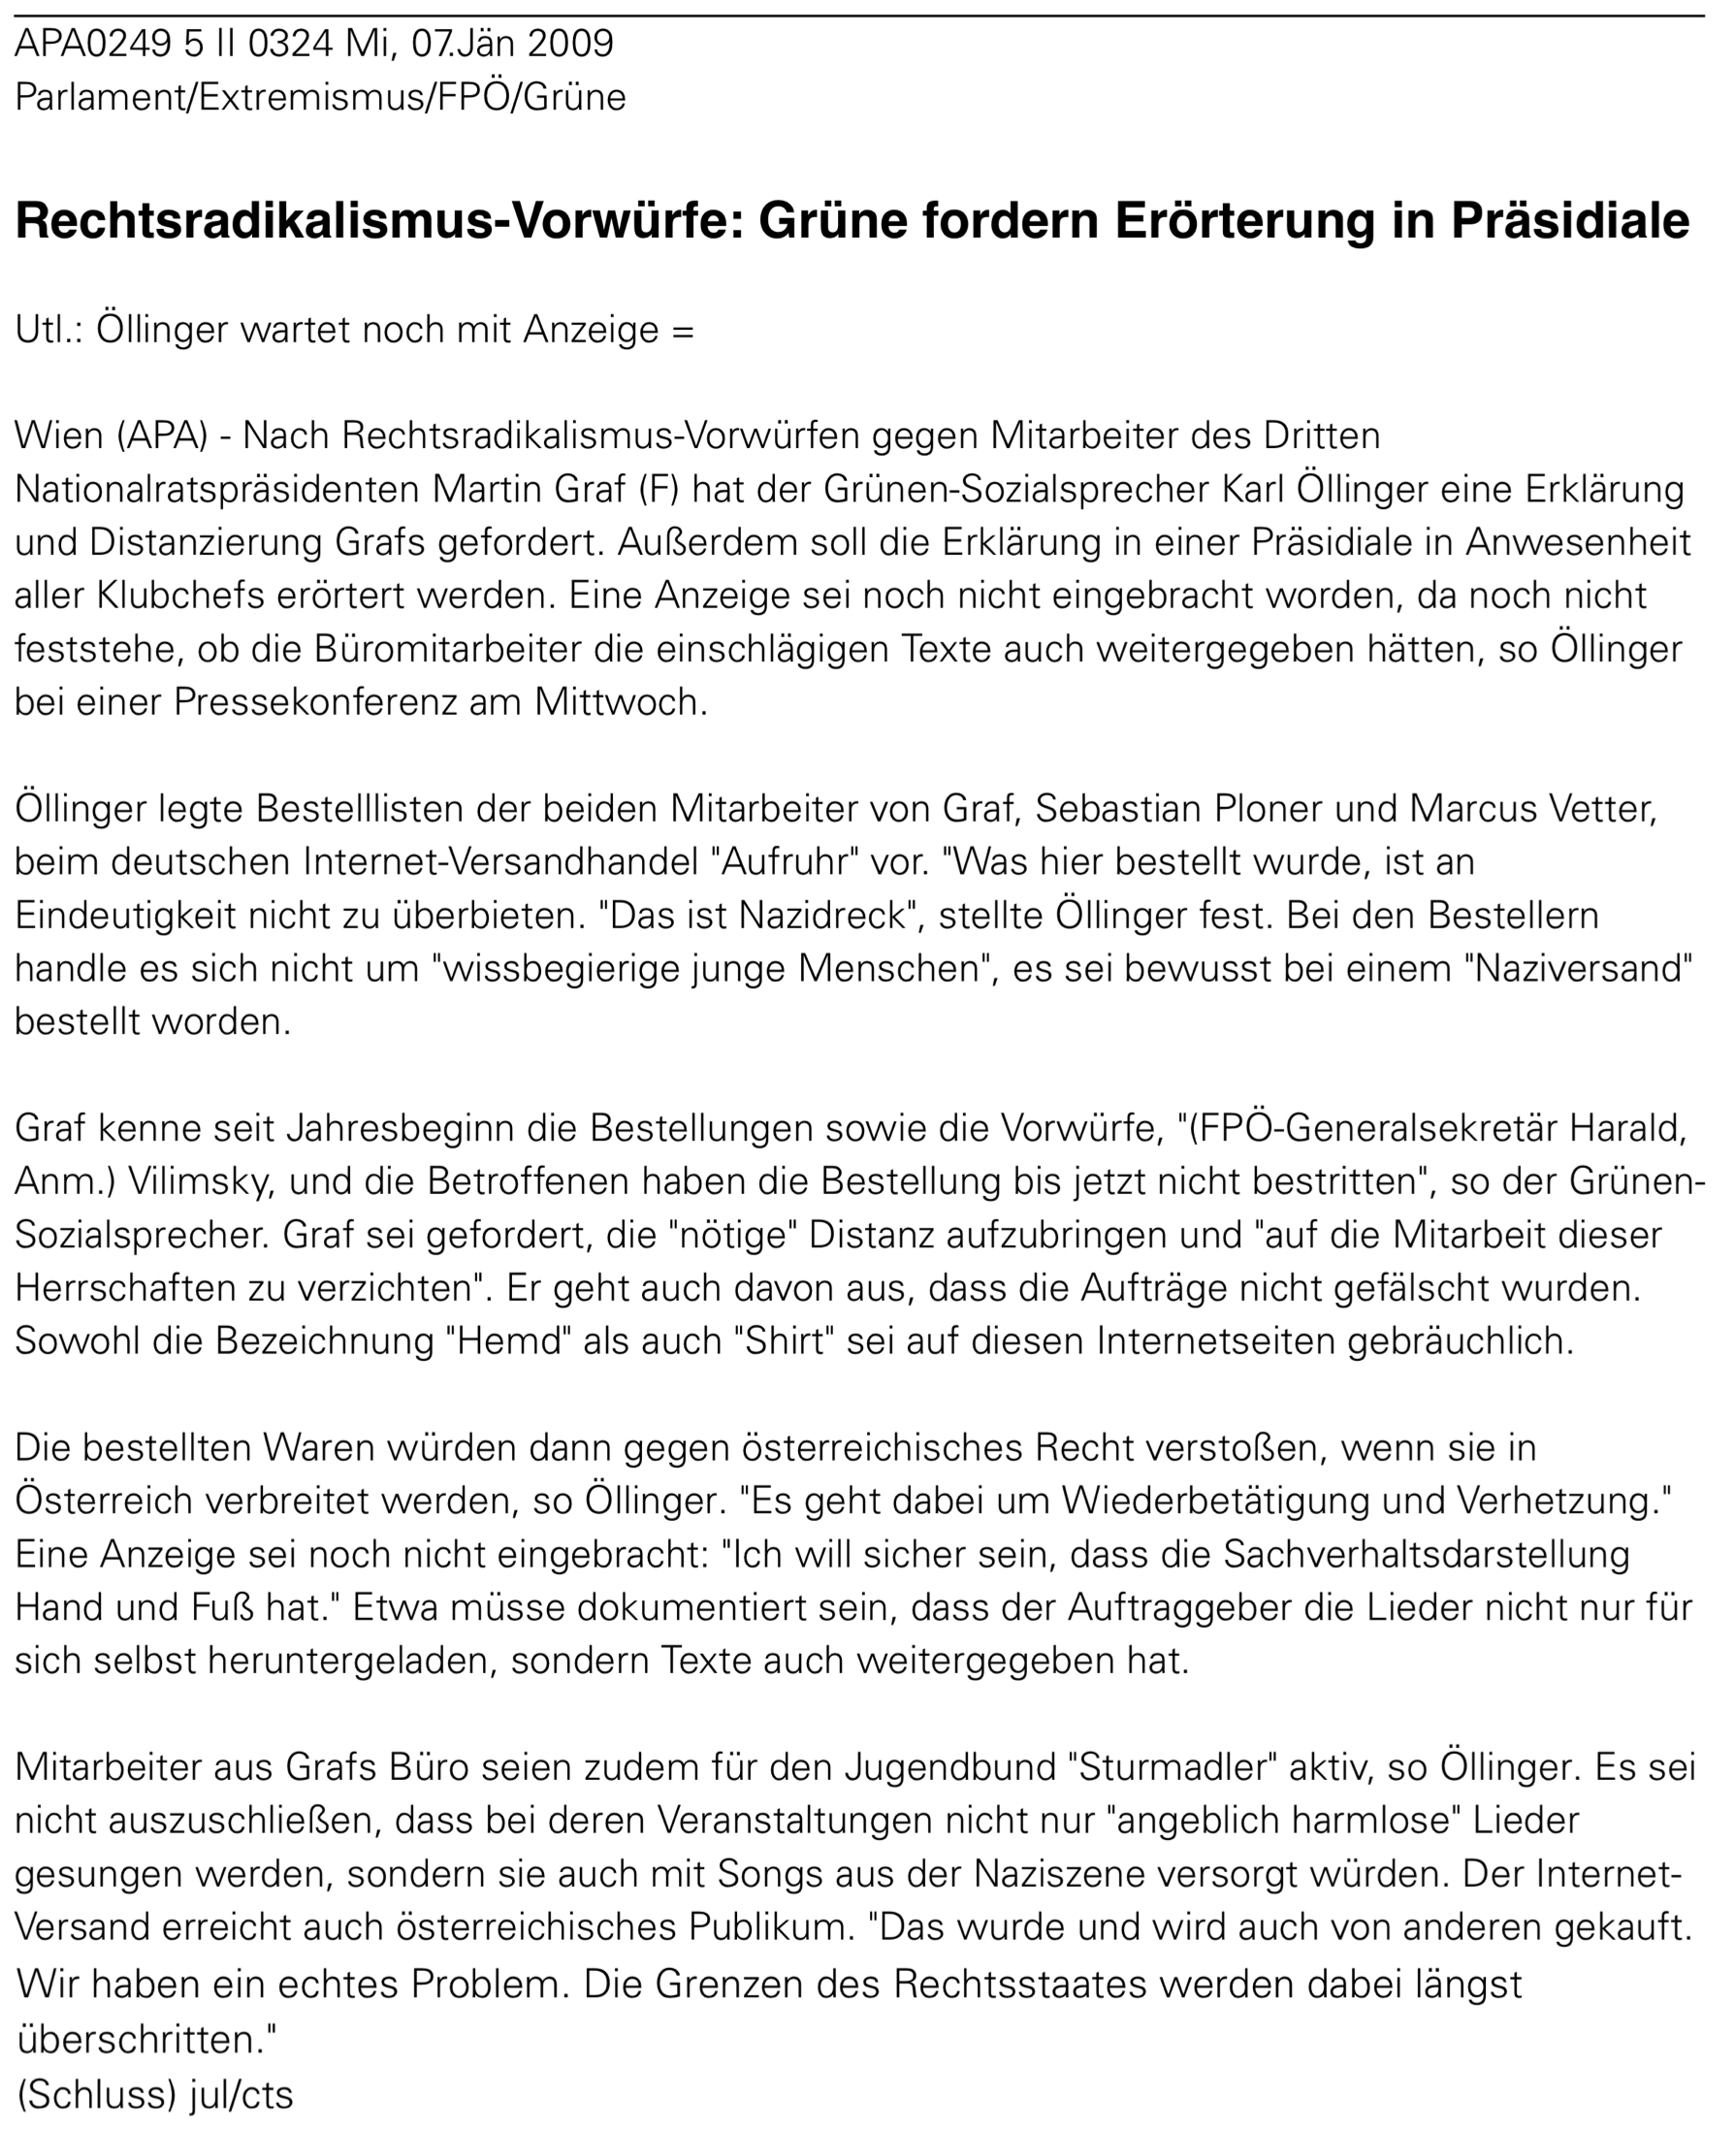 APA-Meldung über die Pressekonferenz von Karl Öllinger am 7.1.2009 zu Grafs Mitarbeiter